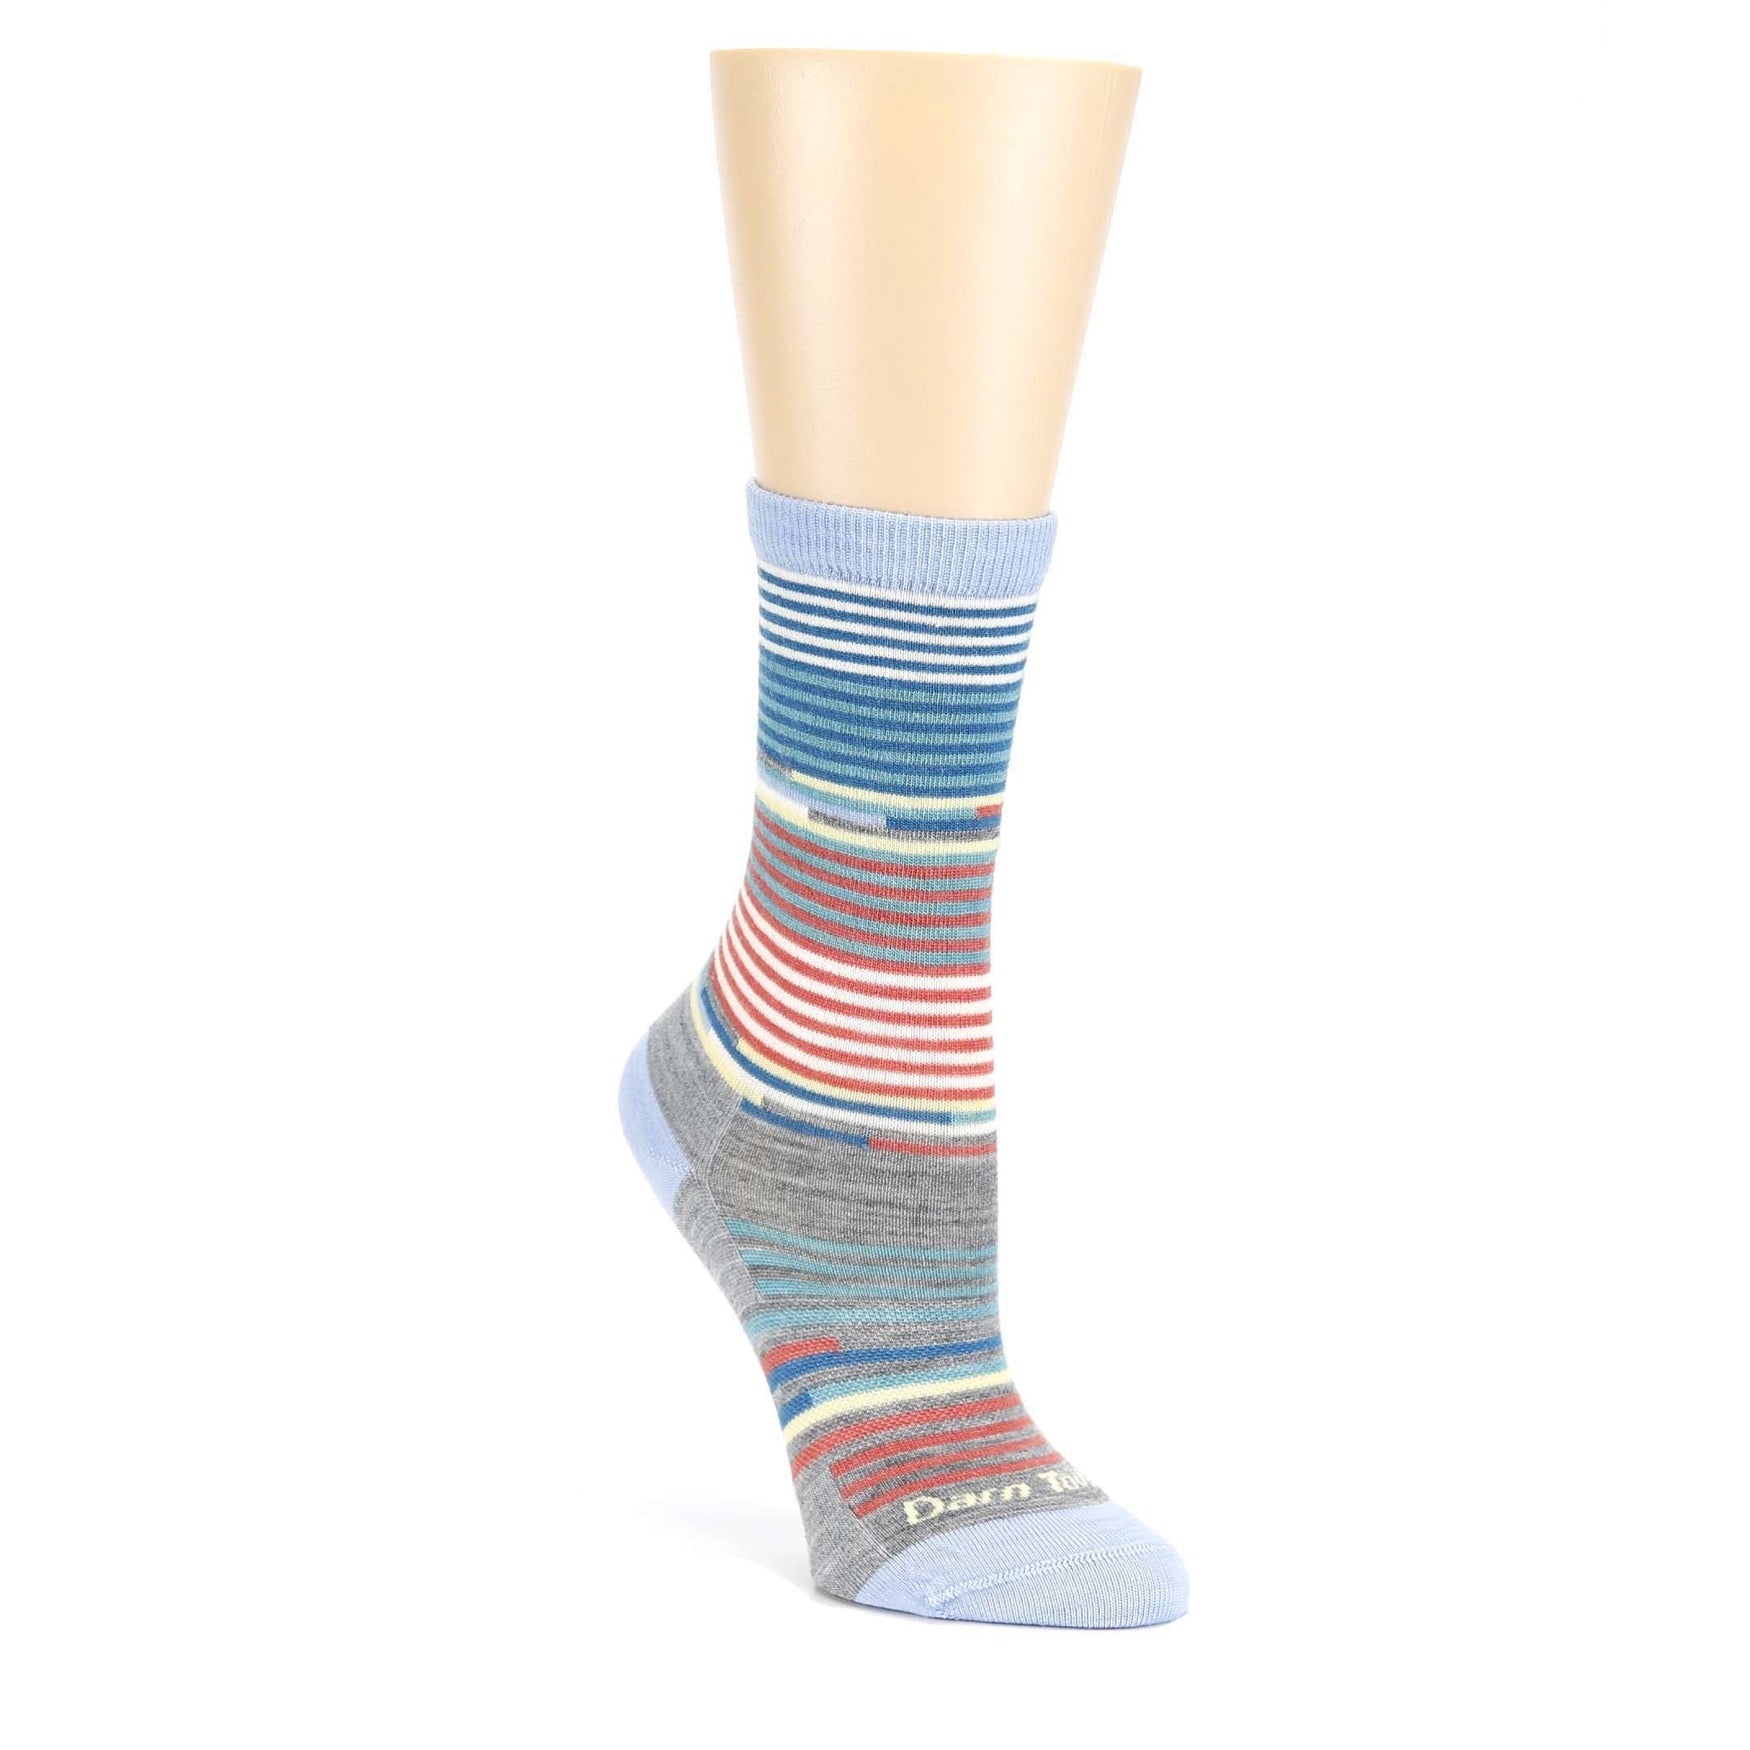 Sky Pixie Crew Light Socks - Women's Casual Socks